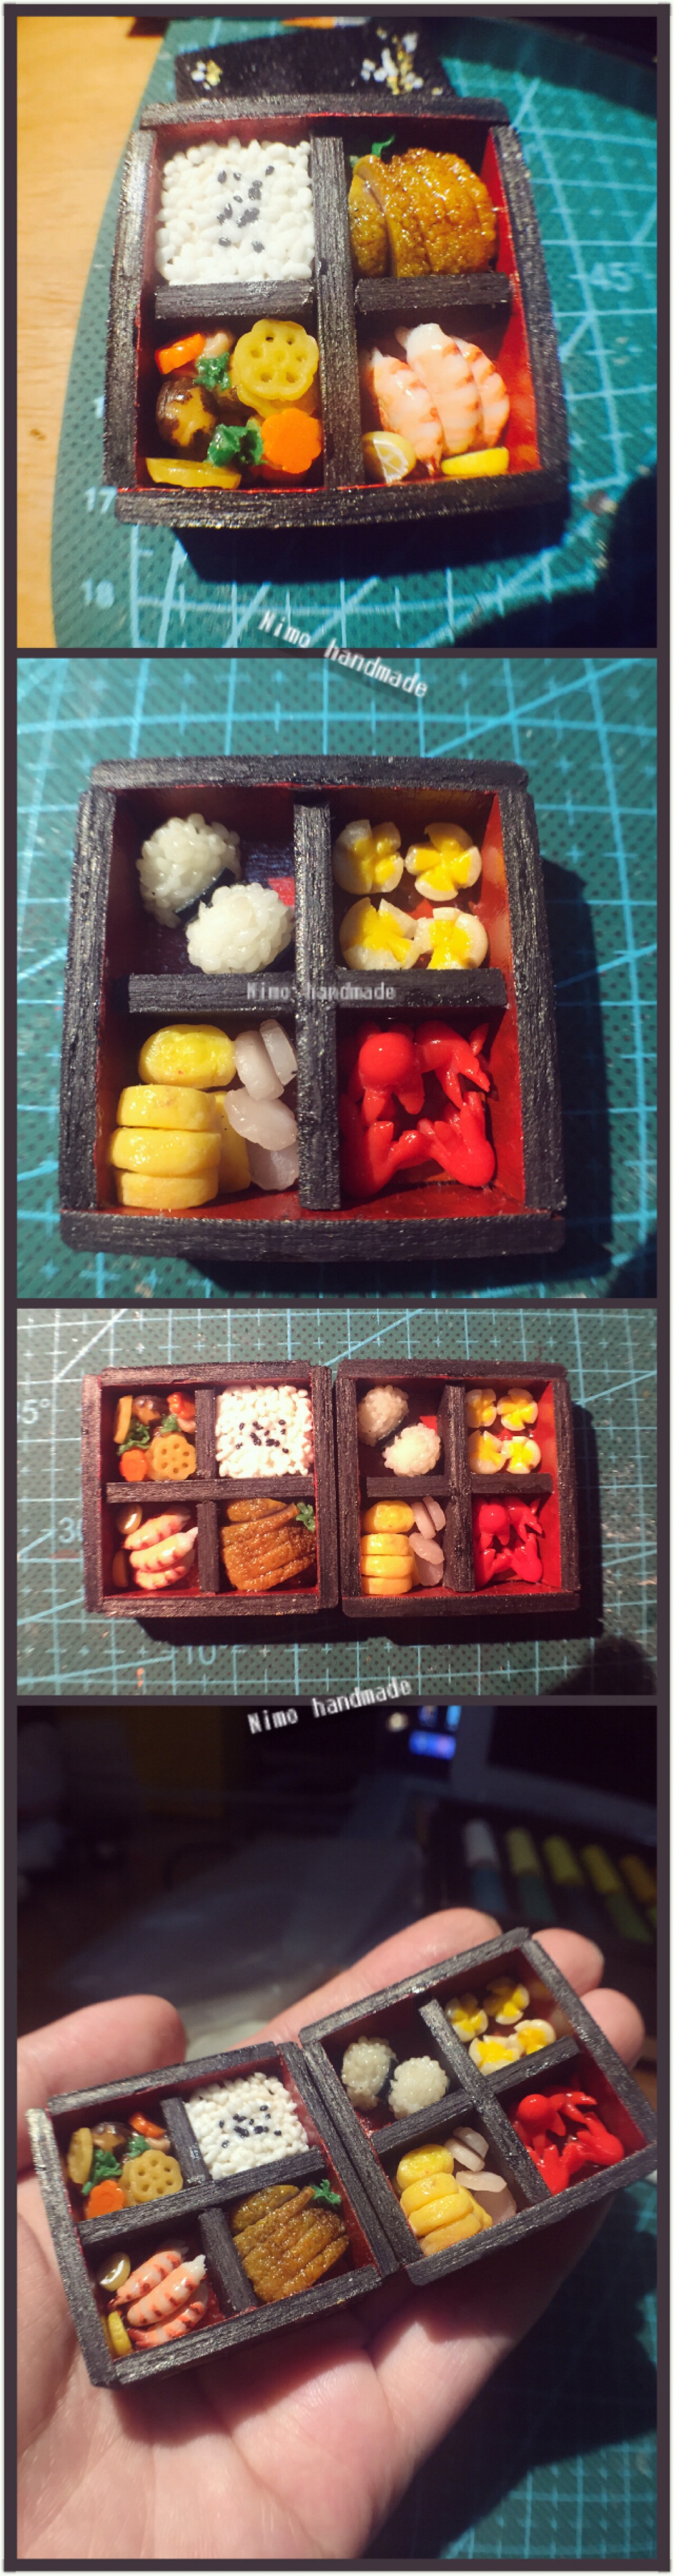 黏土食玩 日本便当 黏土作品展